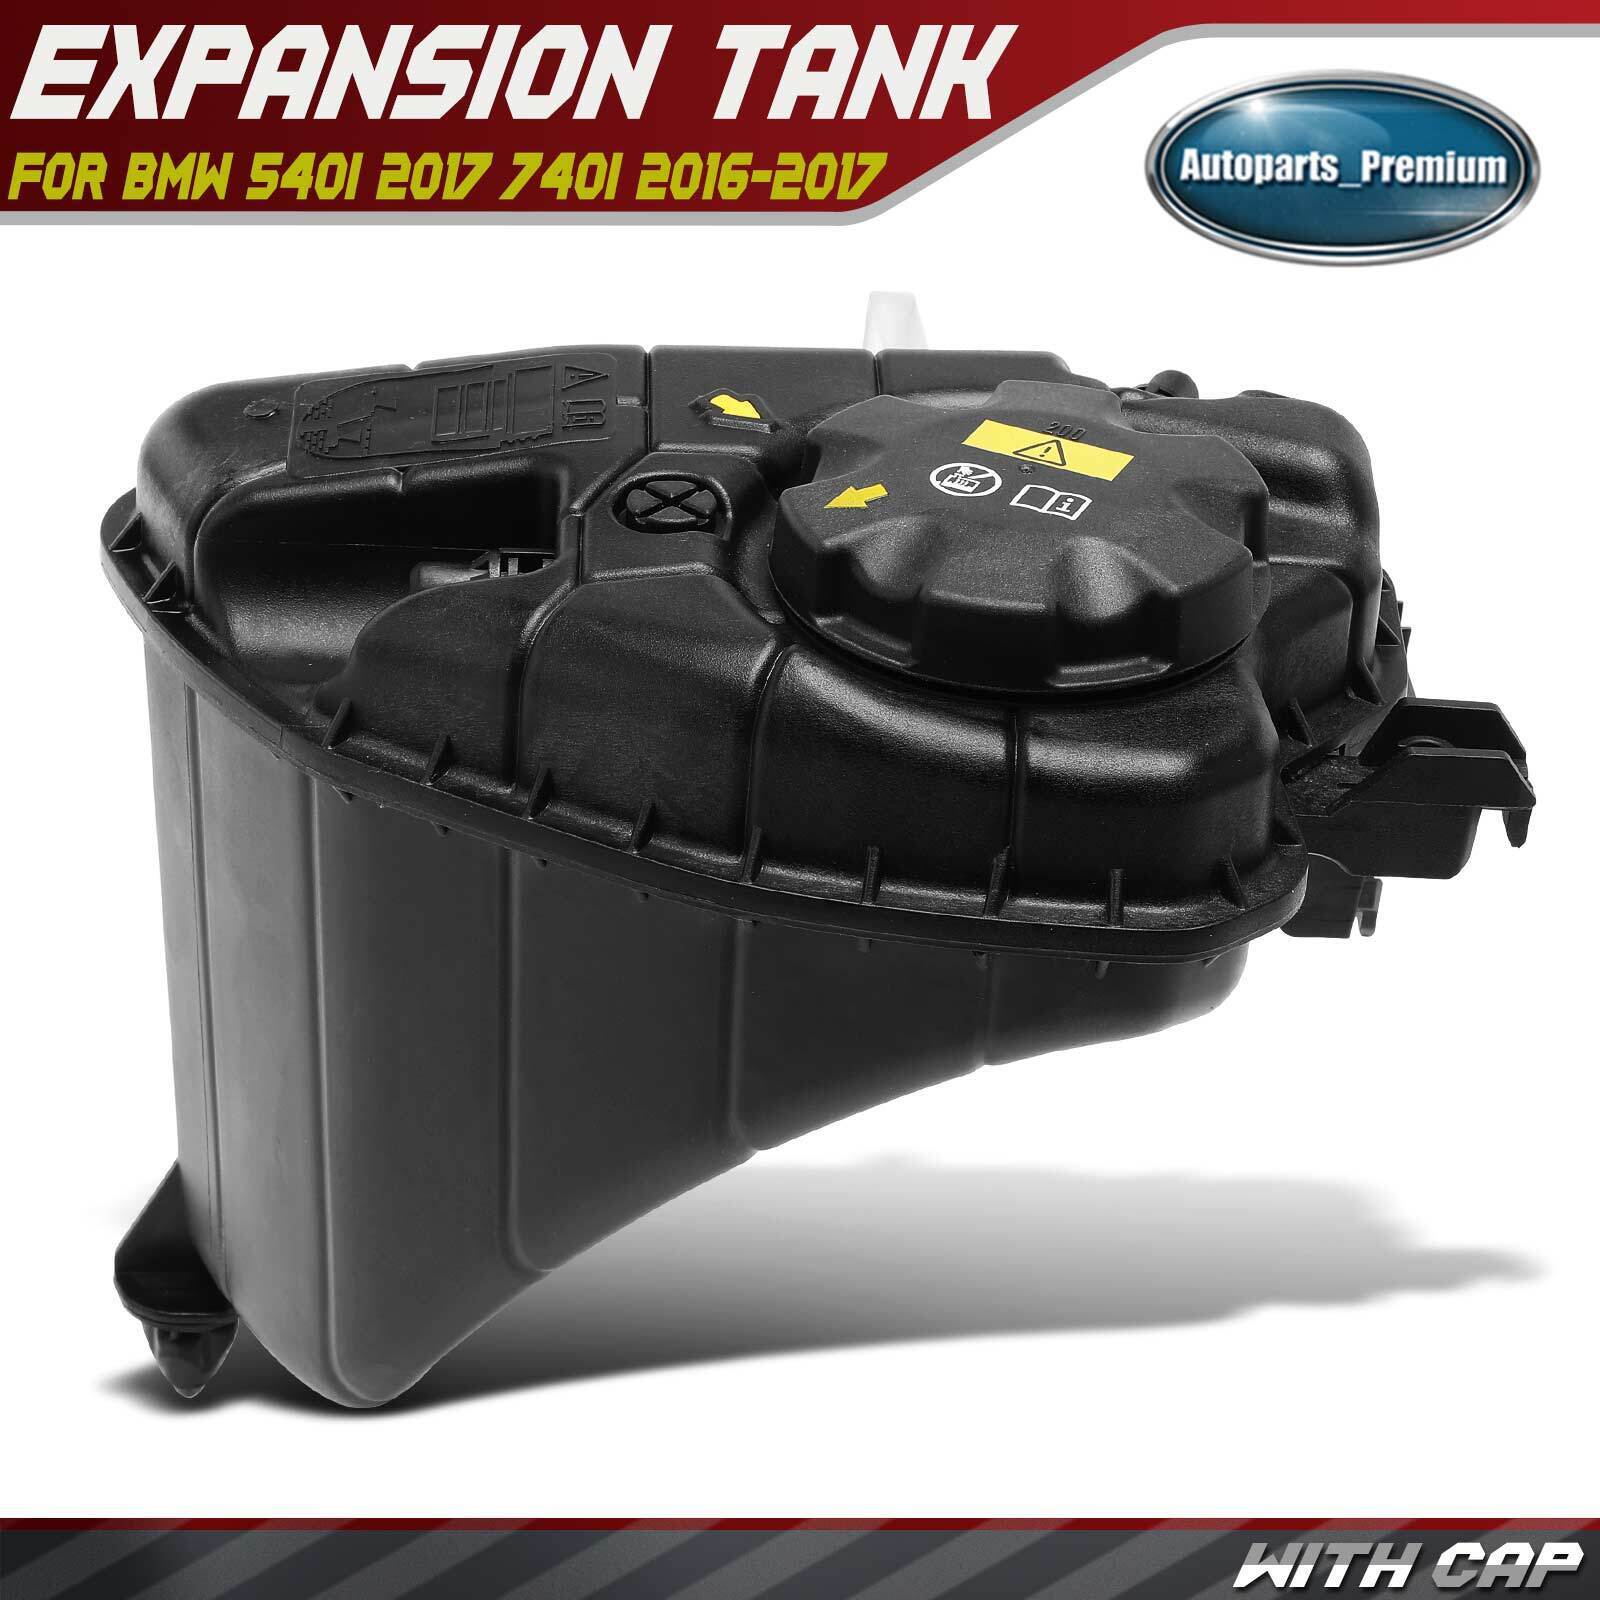 Engine Coolant Reservoir Tank w/ Cap for BMW 540i 2017 740i 2016-2017 L6 3.0L